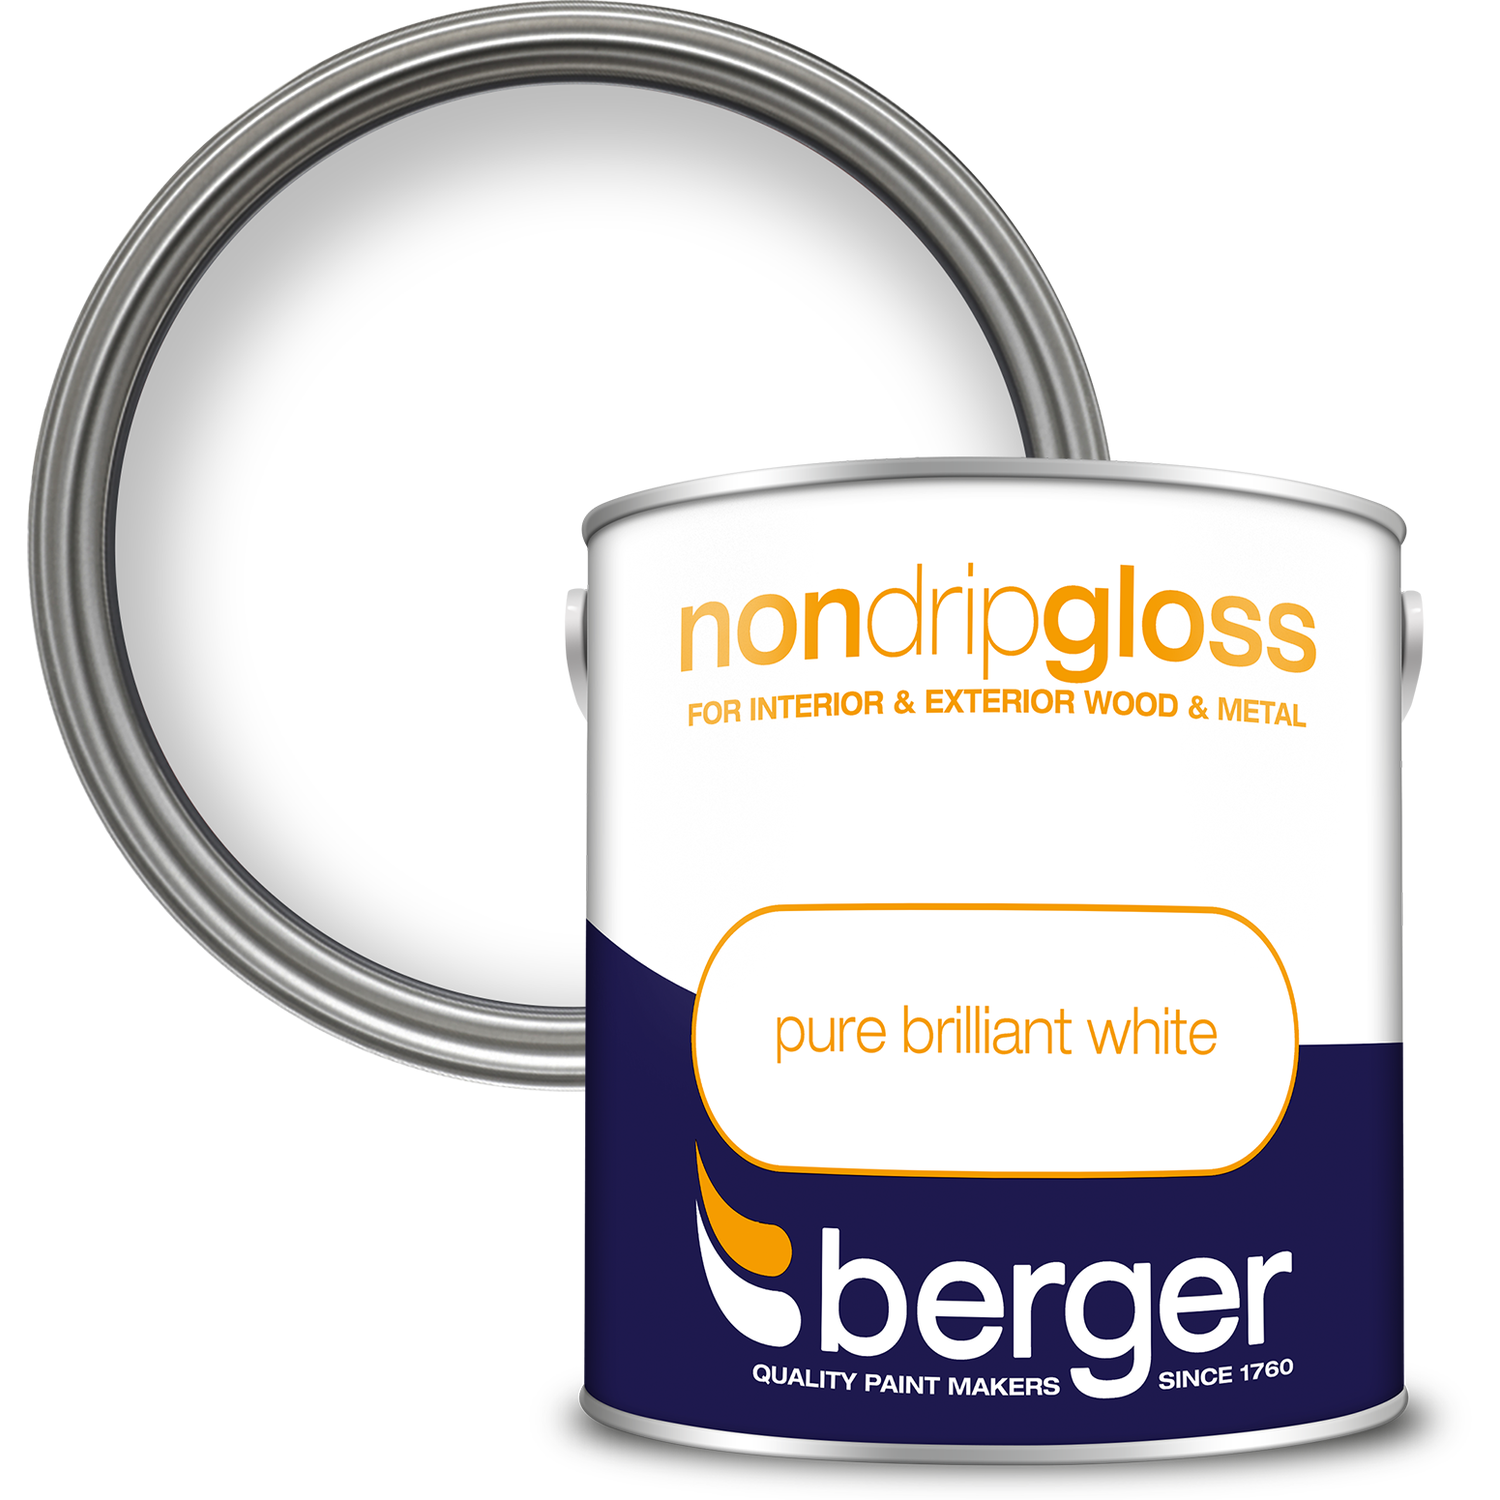 Berger Non Drip Gloss 2.5L - Pure Brilliant White Image 1